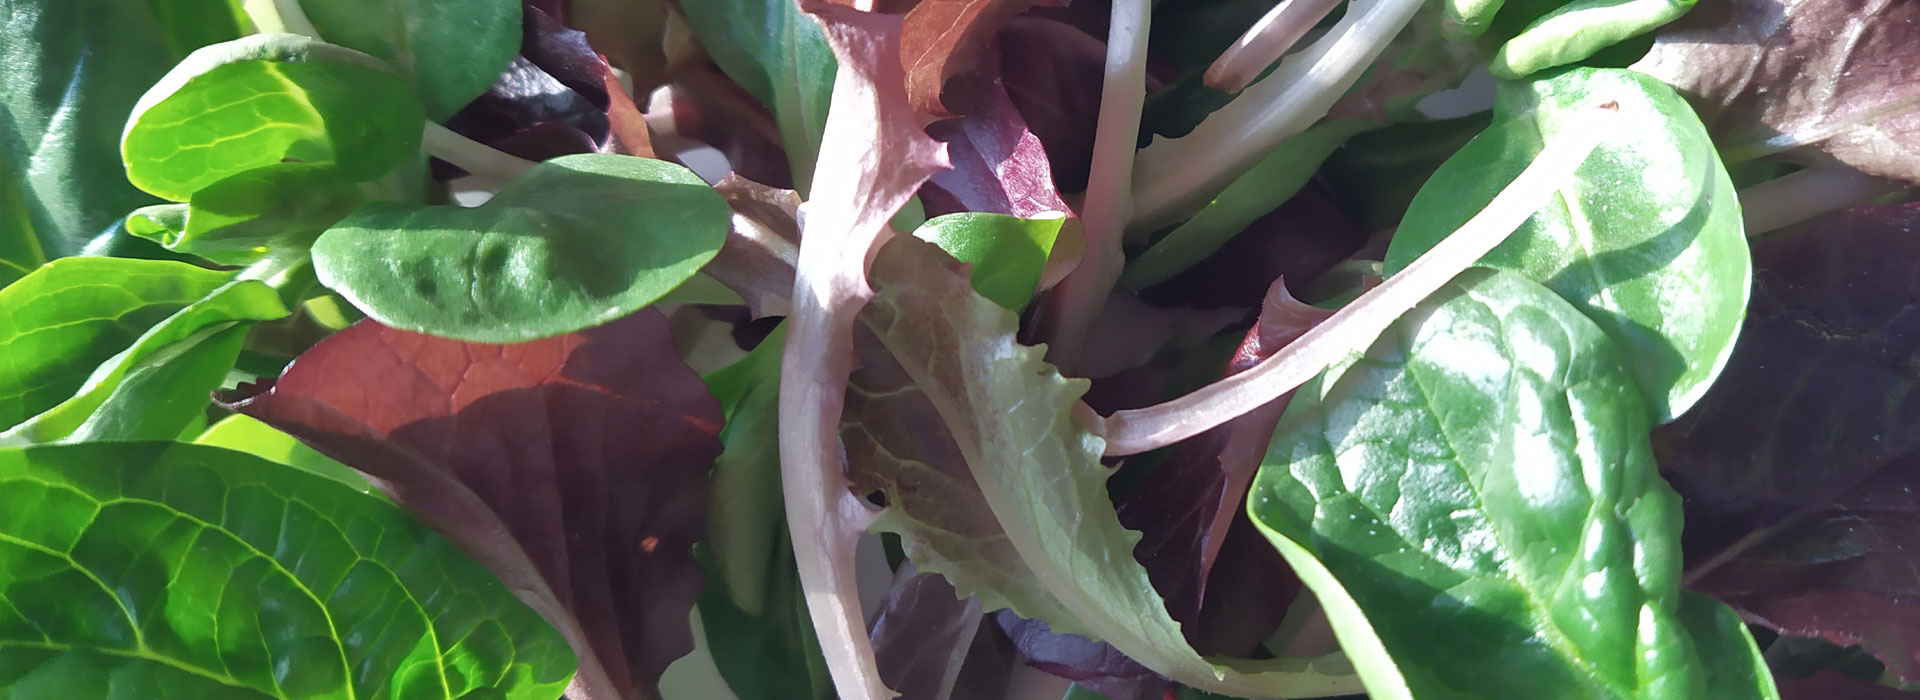 Baby Leaf salad